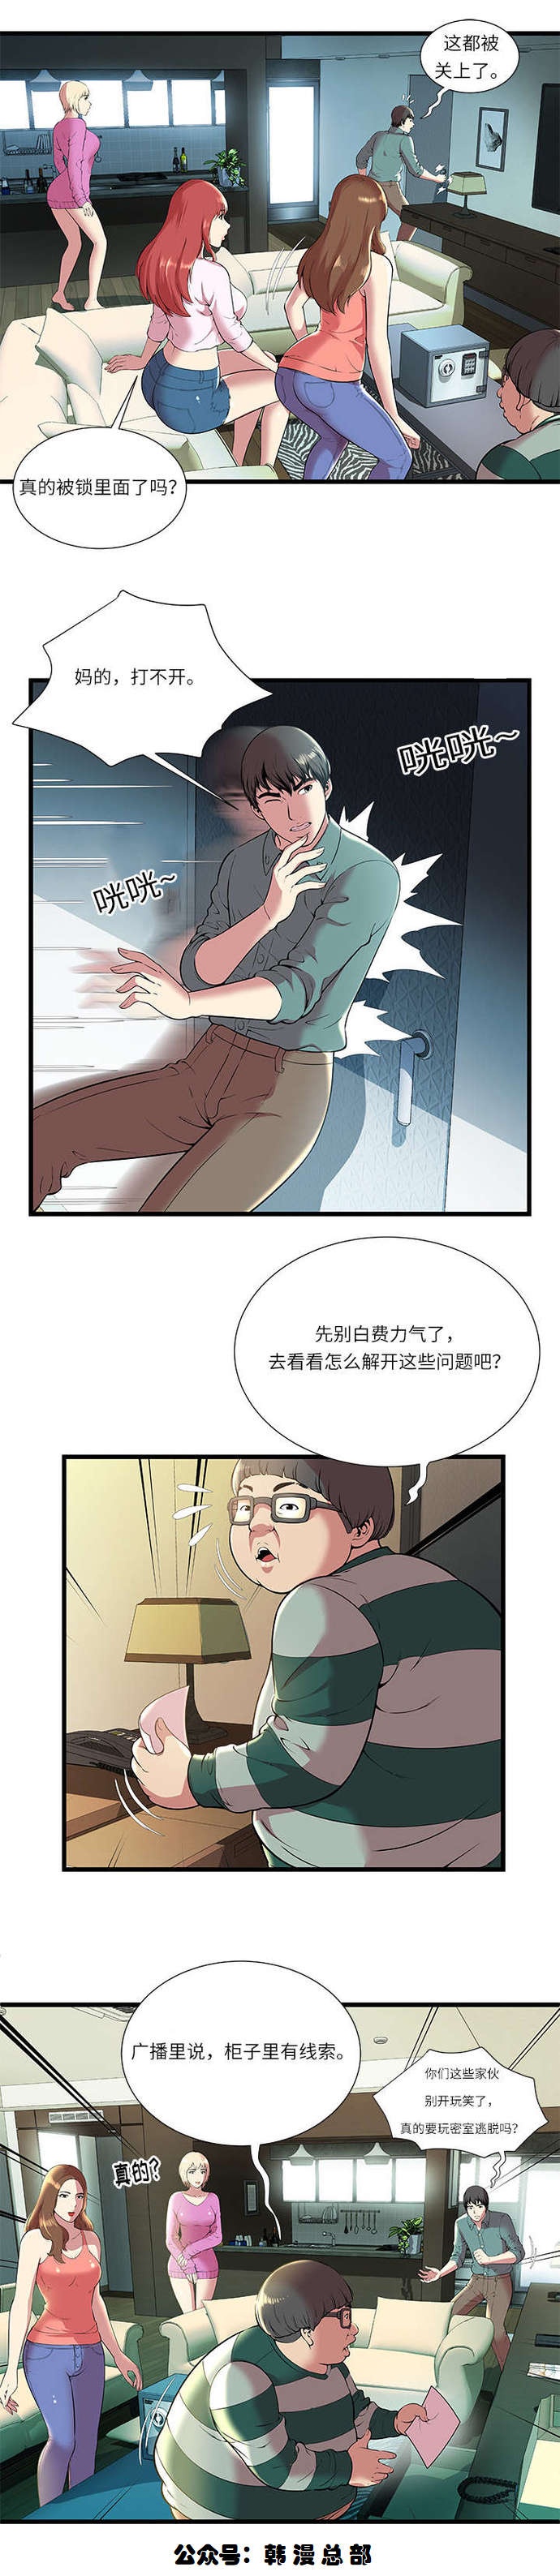 韩国漫画《逃脱游戏》《密室逃脱》无遮挡在线阅读